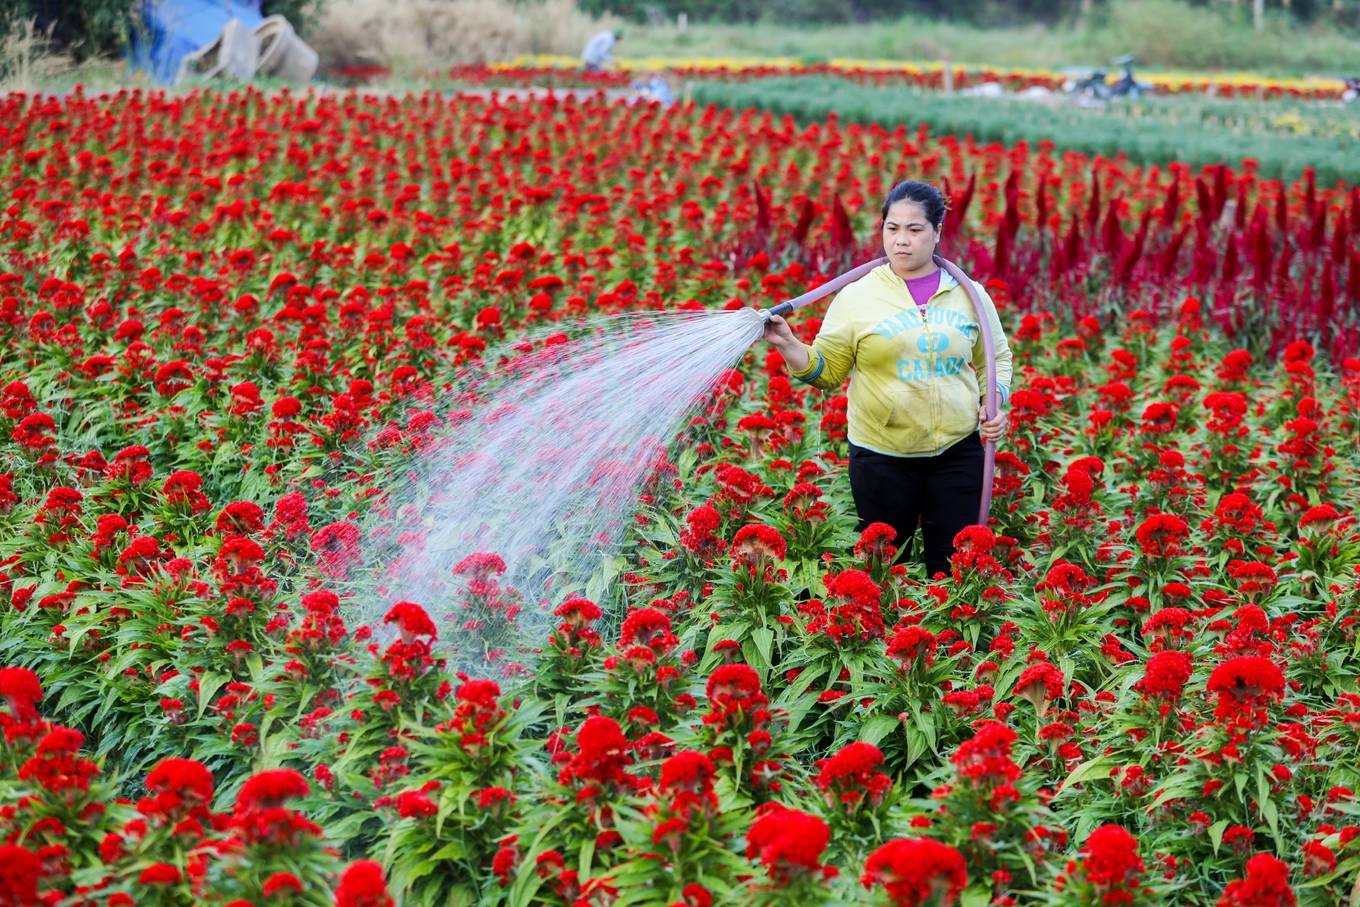 Cận cảnh làng hoa ngoại thành Sài Gòn những ngày giáp tết Bình Tý 20202